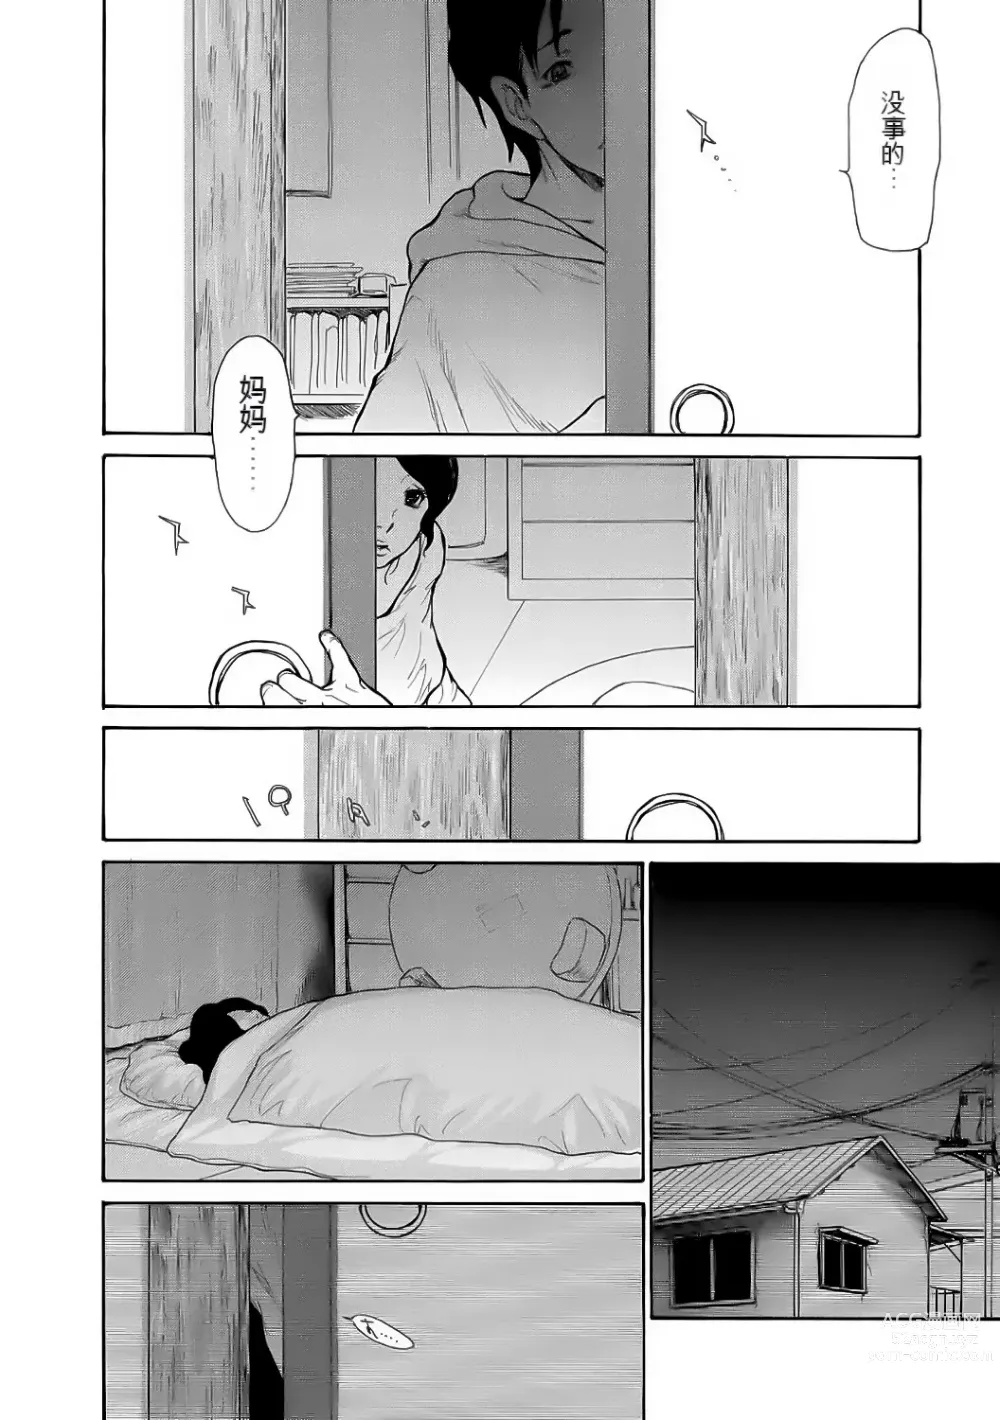 Page 160 of manga Haha wa Onna de Aru 1-8